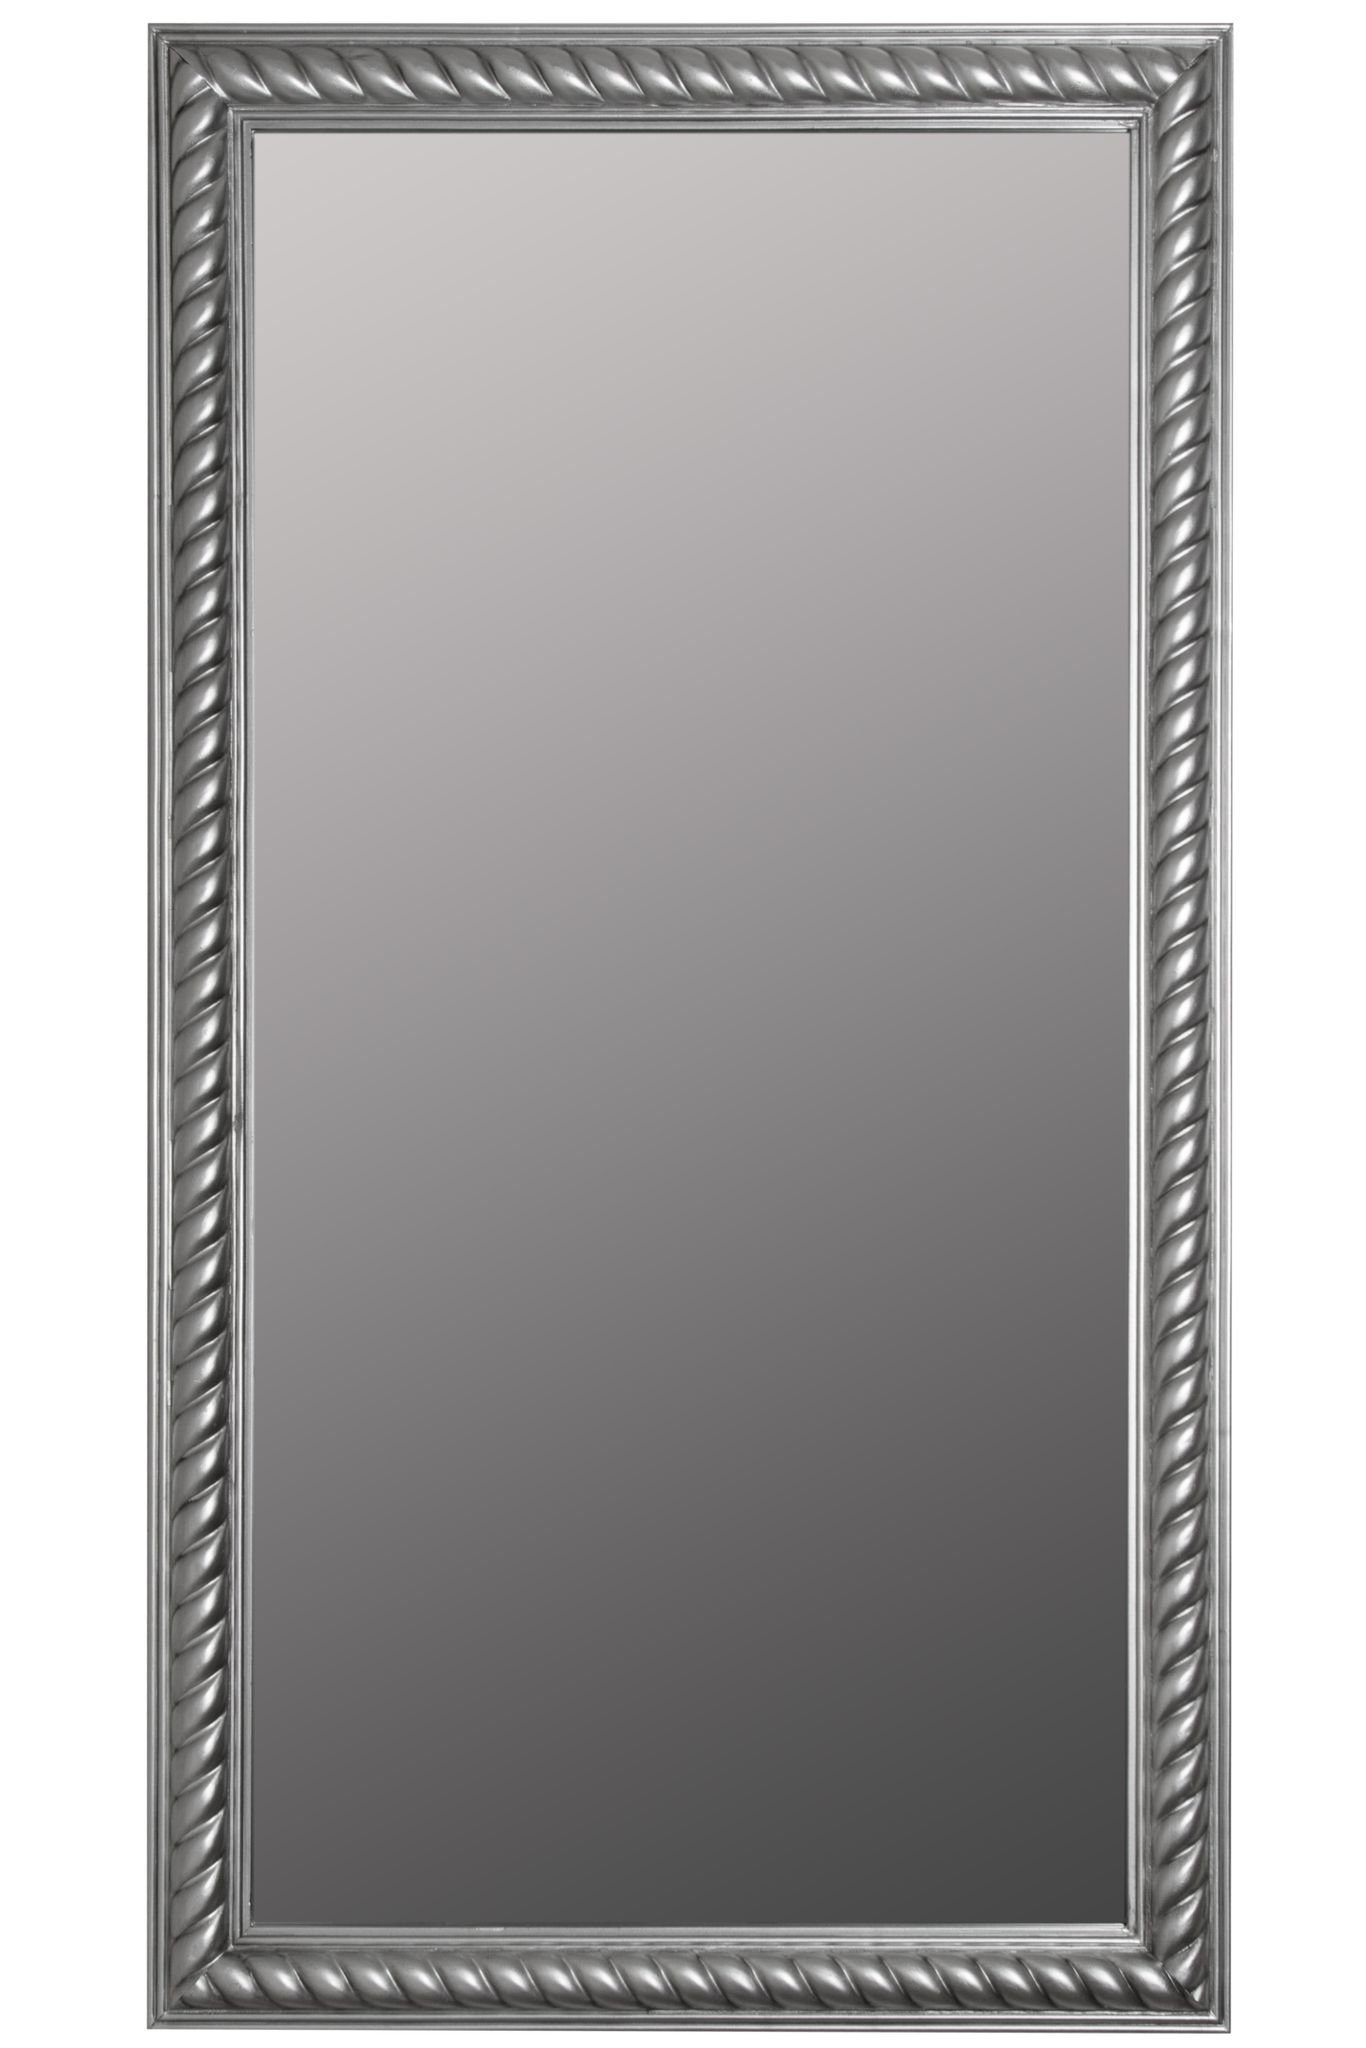 elbmöbel Wandspiegel »Wandspiegel Spiegel Badezimmerspiegel«, Wandspiegel:  Kordelrahmen 72x132x7 cm holz silber vintage online kaufen | OTTO